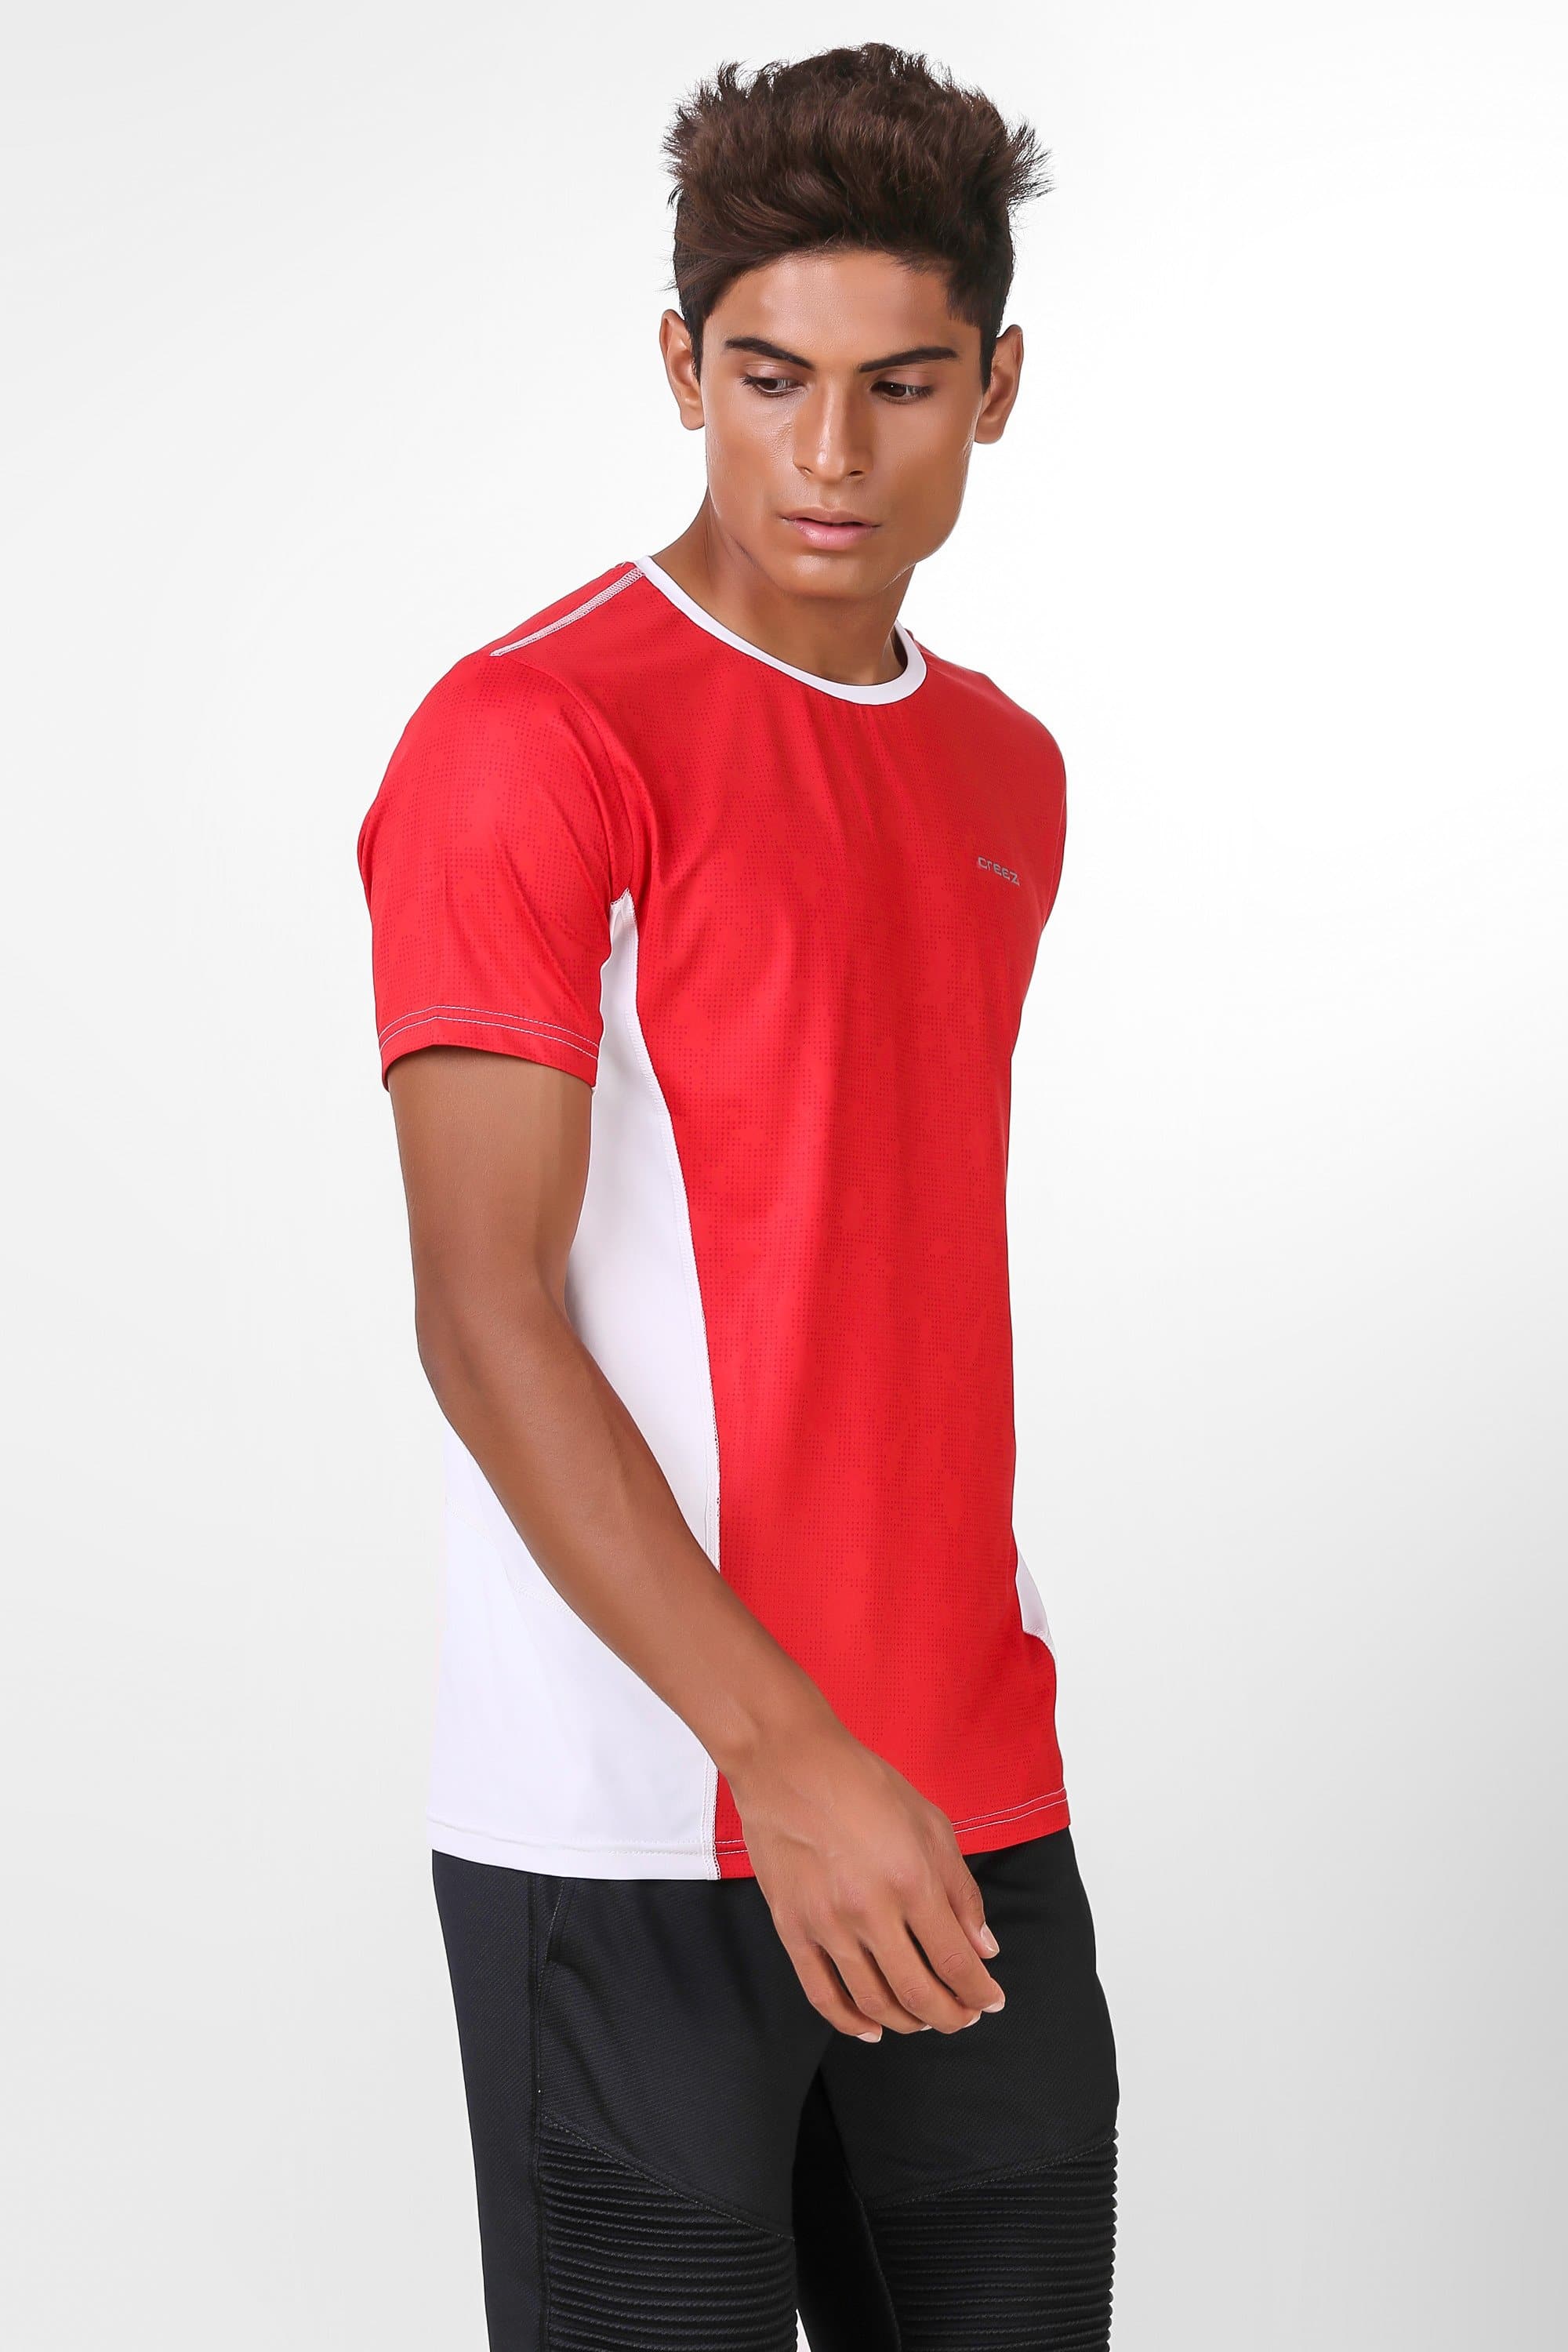 Camo Print Stretchable Tshirt 3